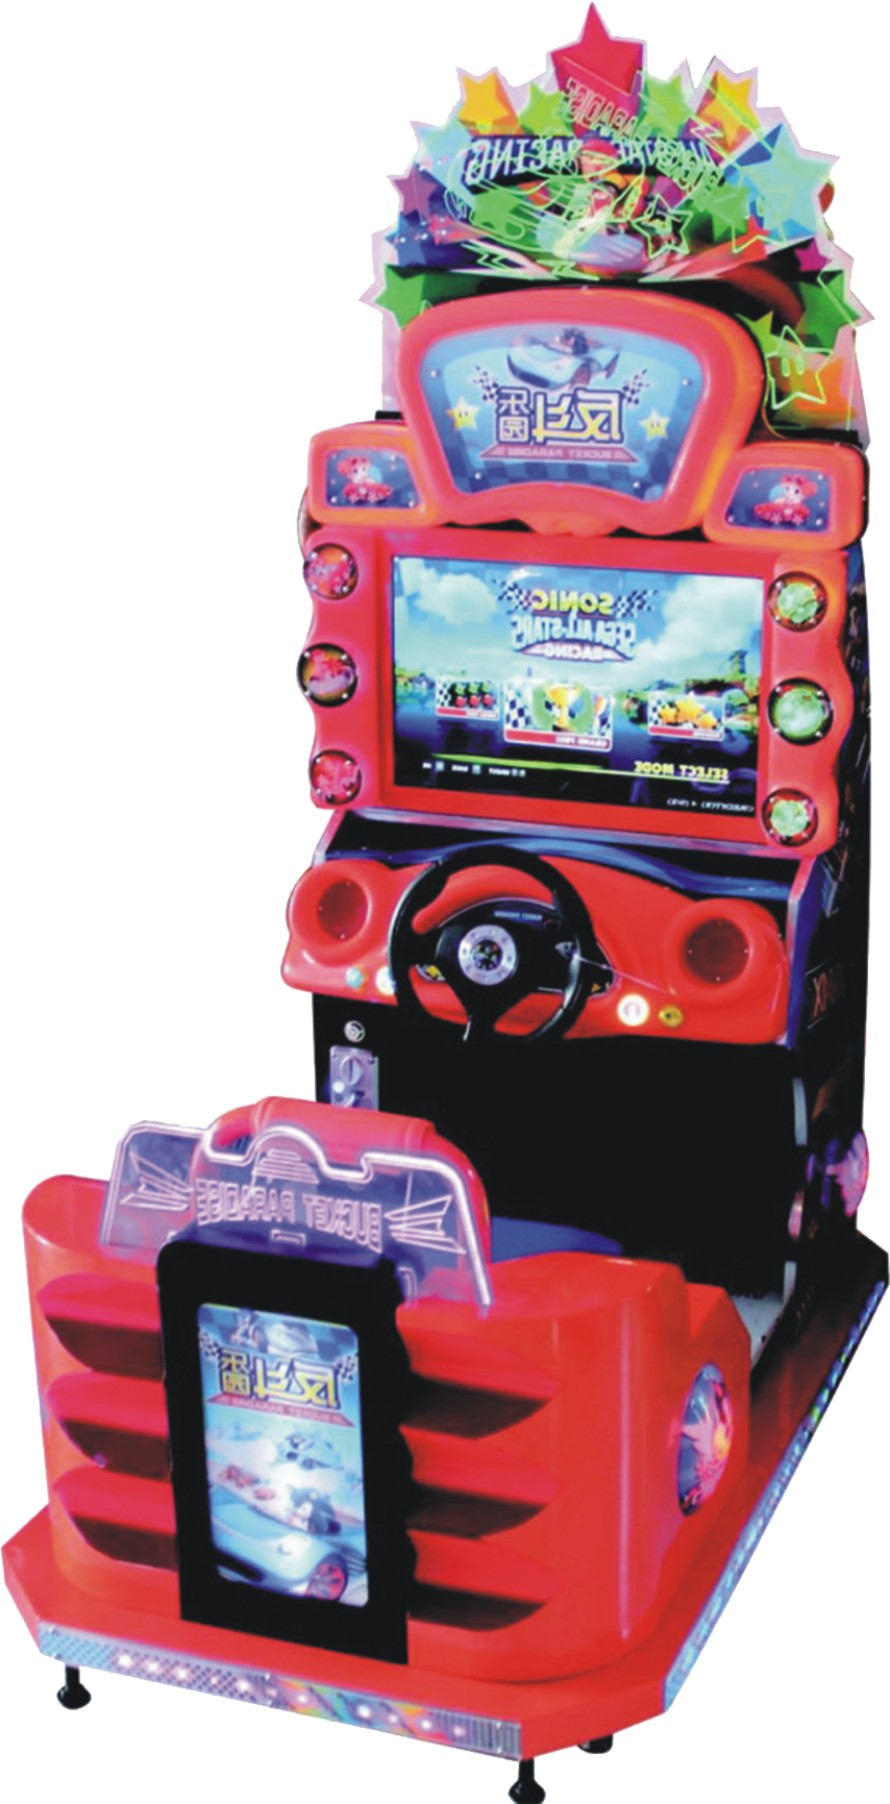 天子娱电玩城儿童模拟赛车环游反斗乐园书尼克电动游戏机